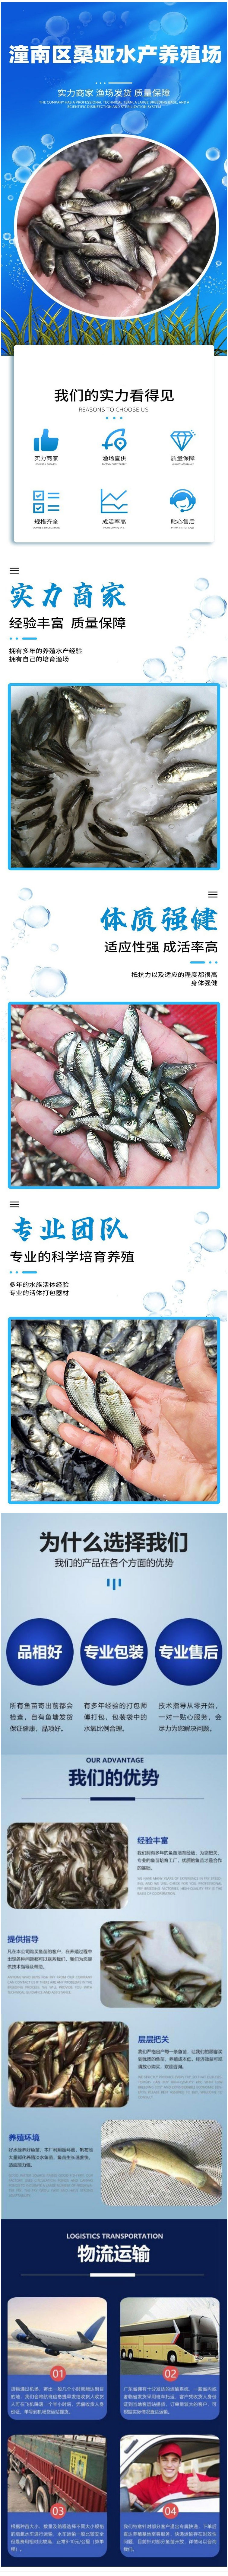 淡水银鳕鱼苗-杂食性鱼类-水库养殖鱼苗生长快.jpg